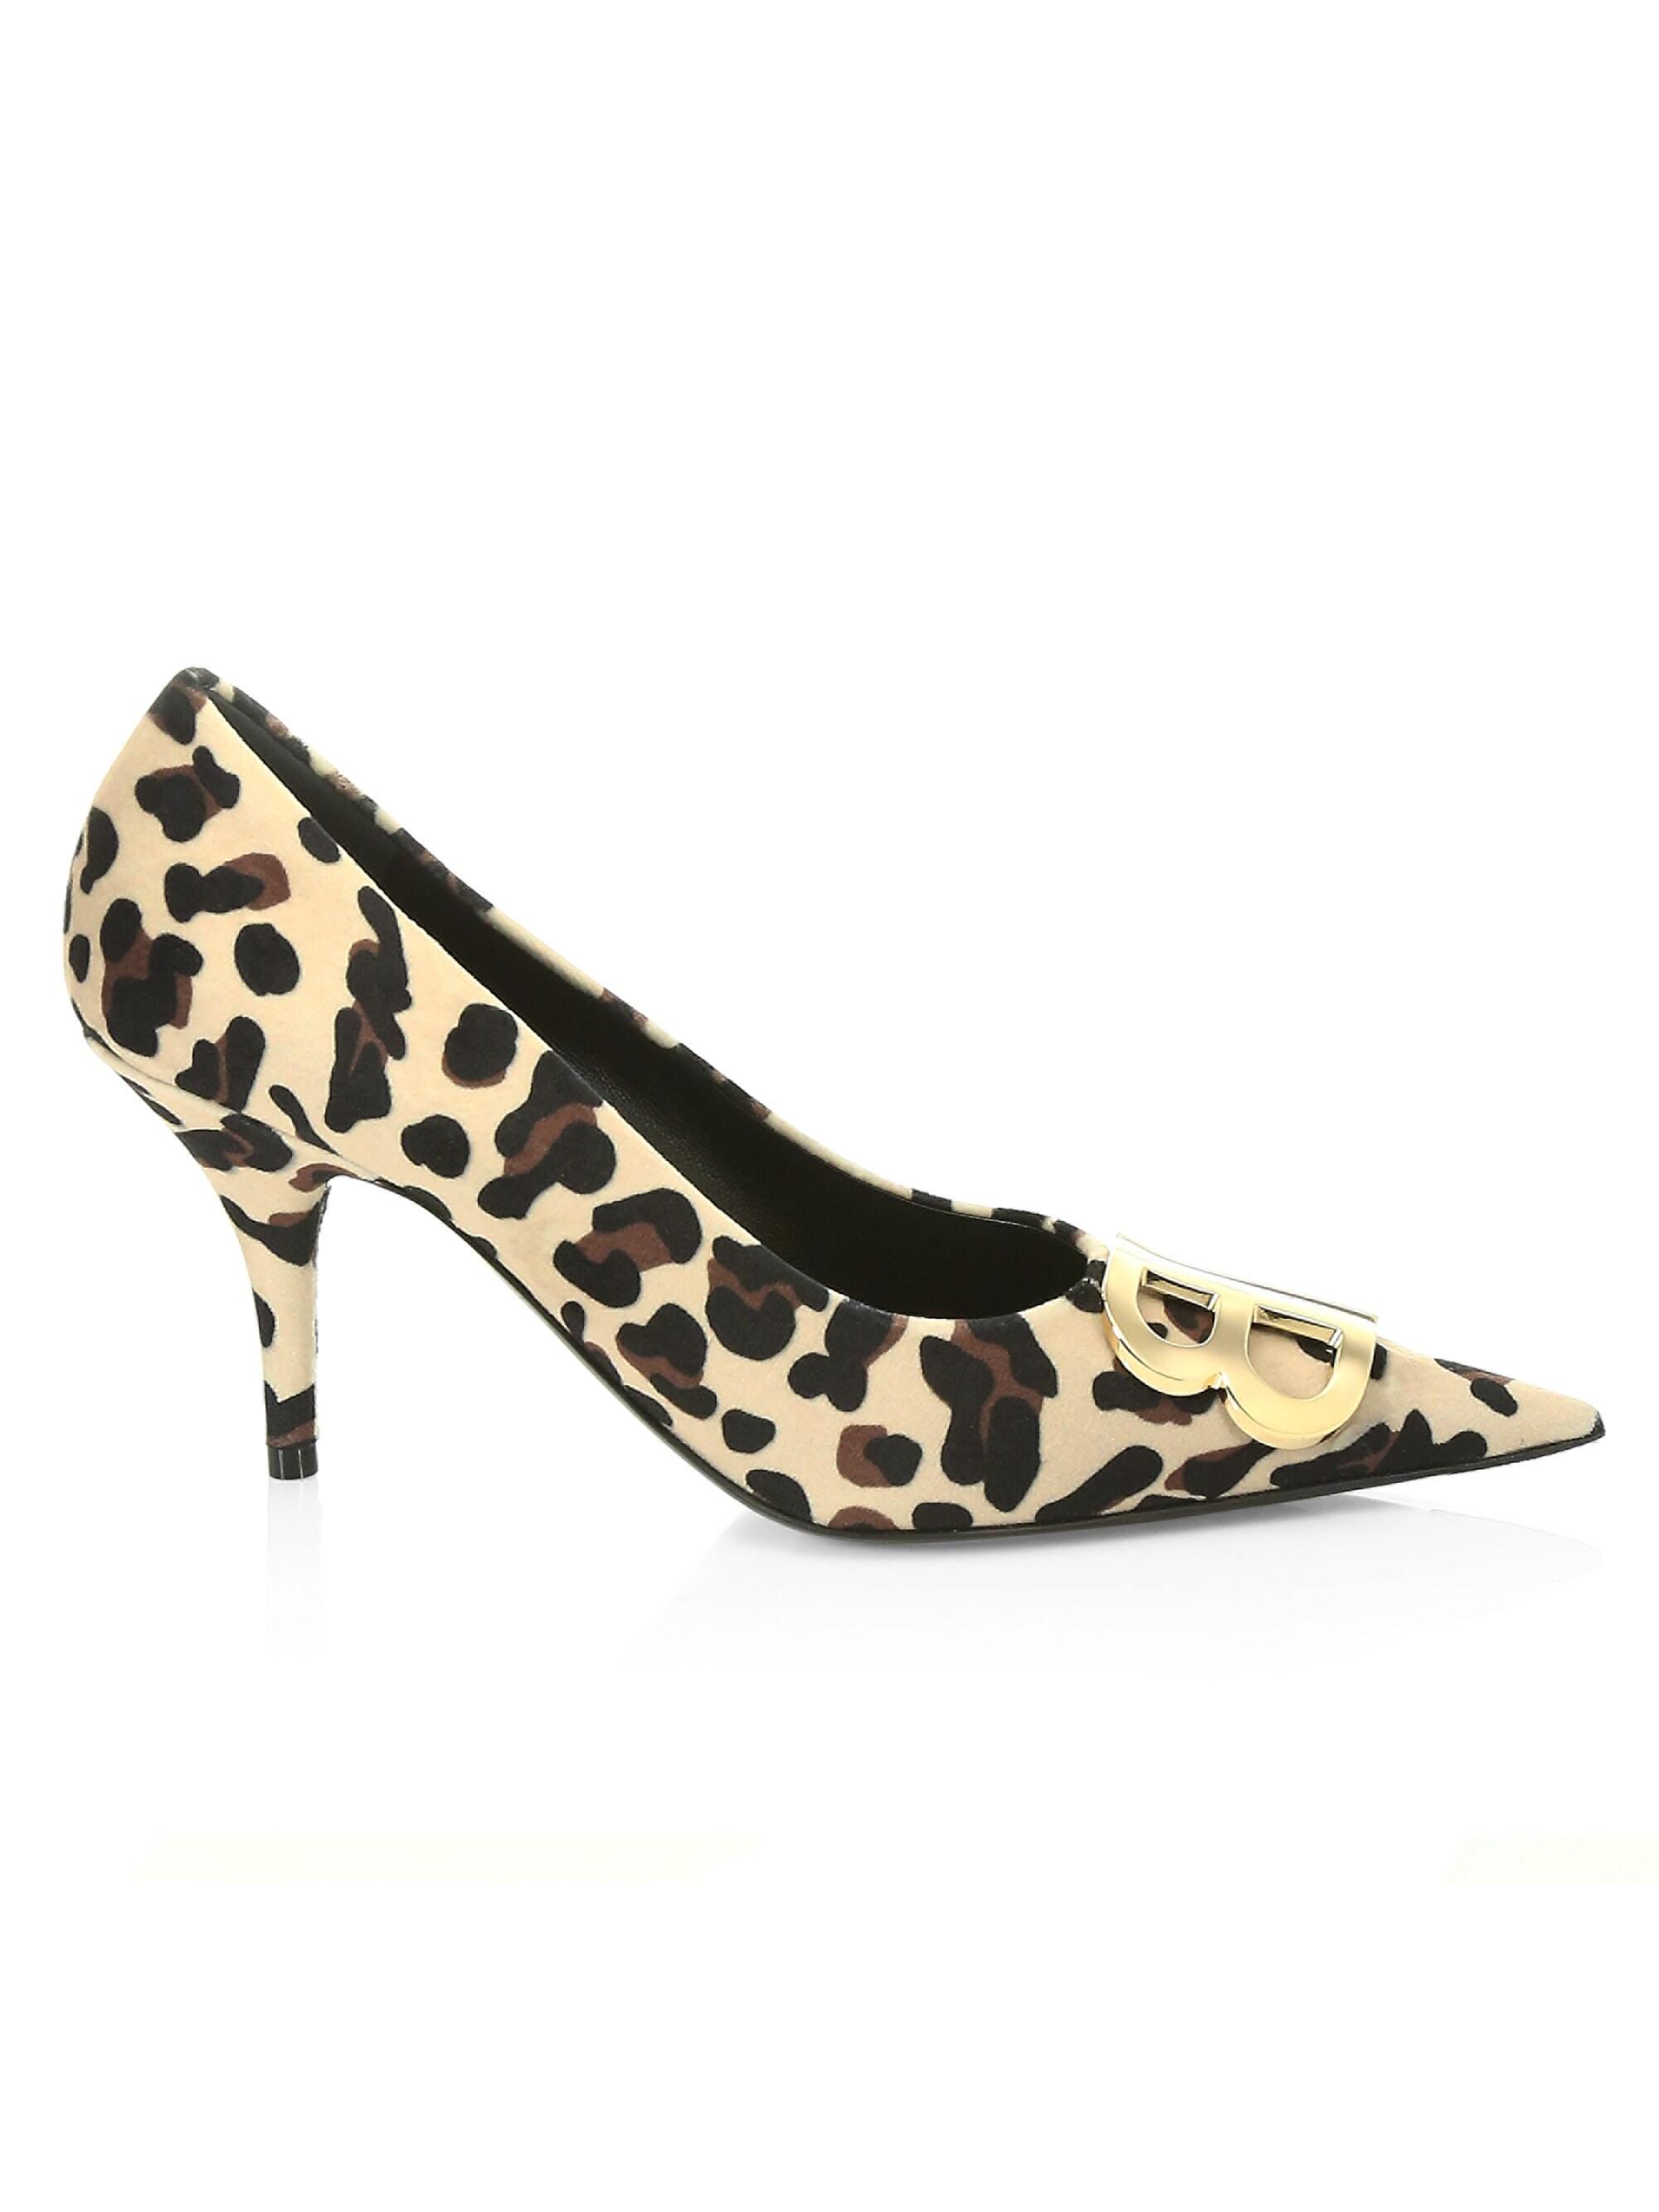 balenciaga leopard shoes